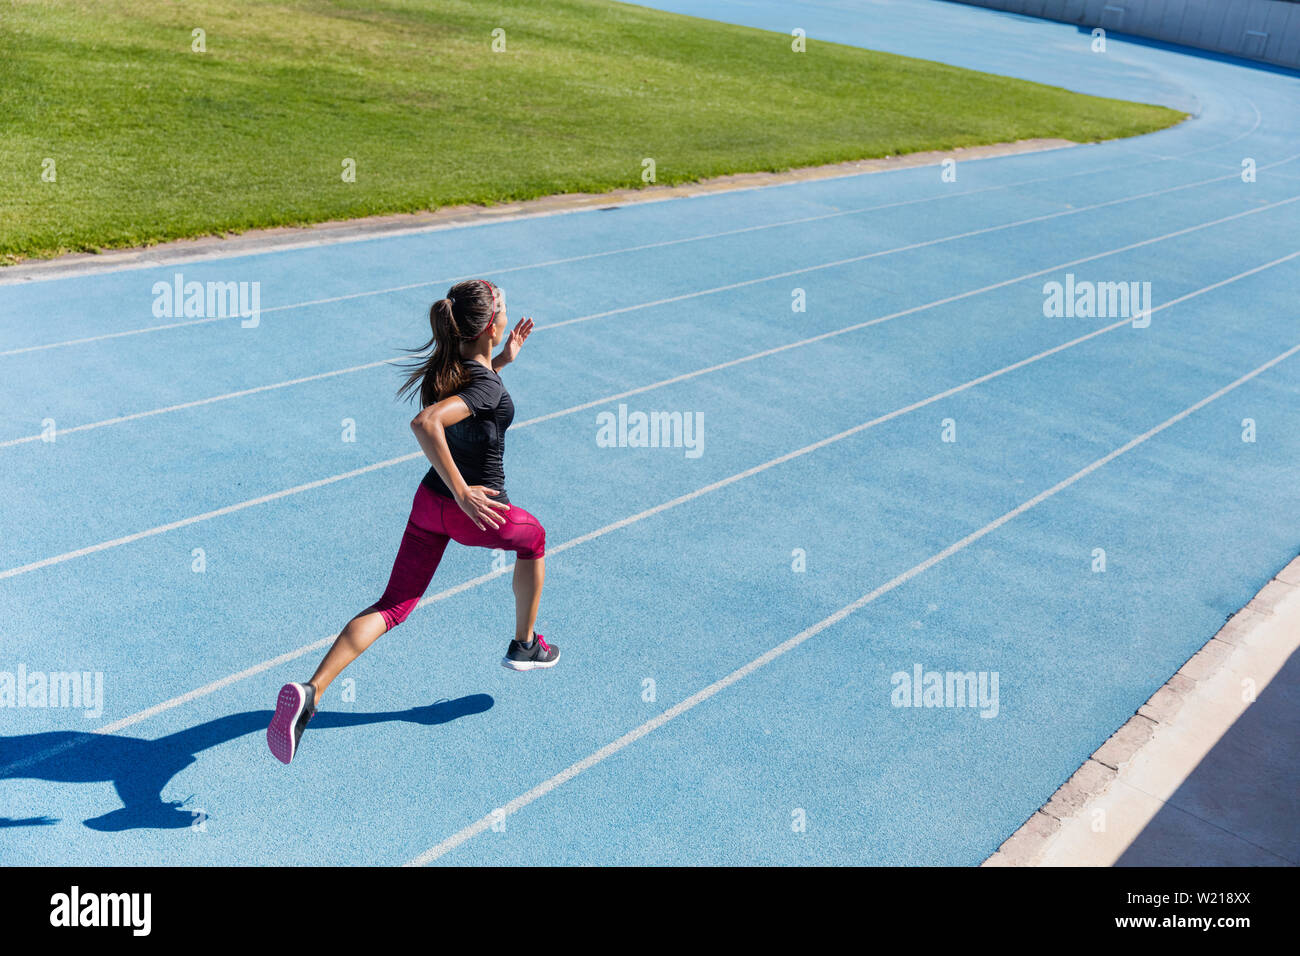 Läufer sprintete in Richtung Erfolg auf Run weg Leichtathletikbahn. Zielerreichung Konzept. Weibliche Athlet Sprinter einen schnellen Sprint für Wettbewerb auf Blue Lane an einer im Bereich Stadion. Stockfoto